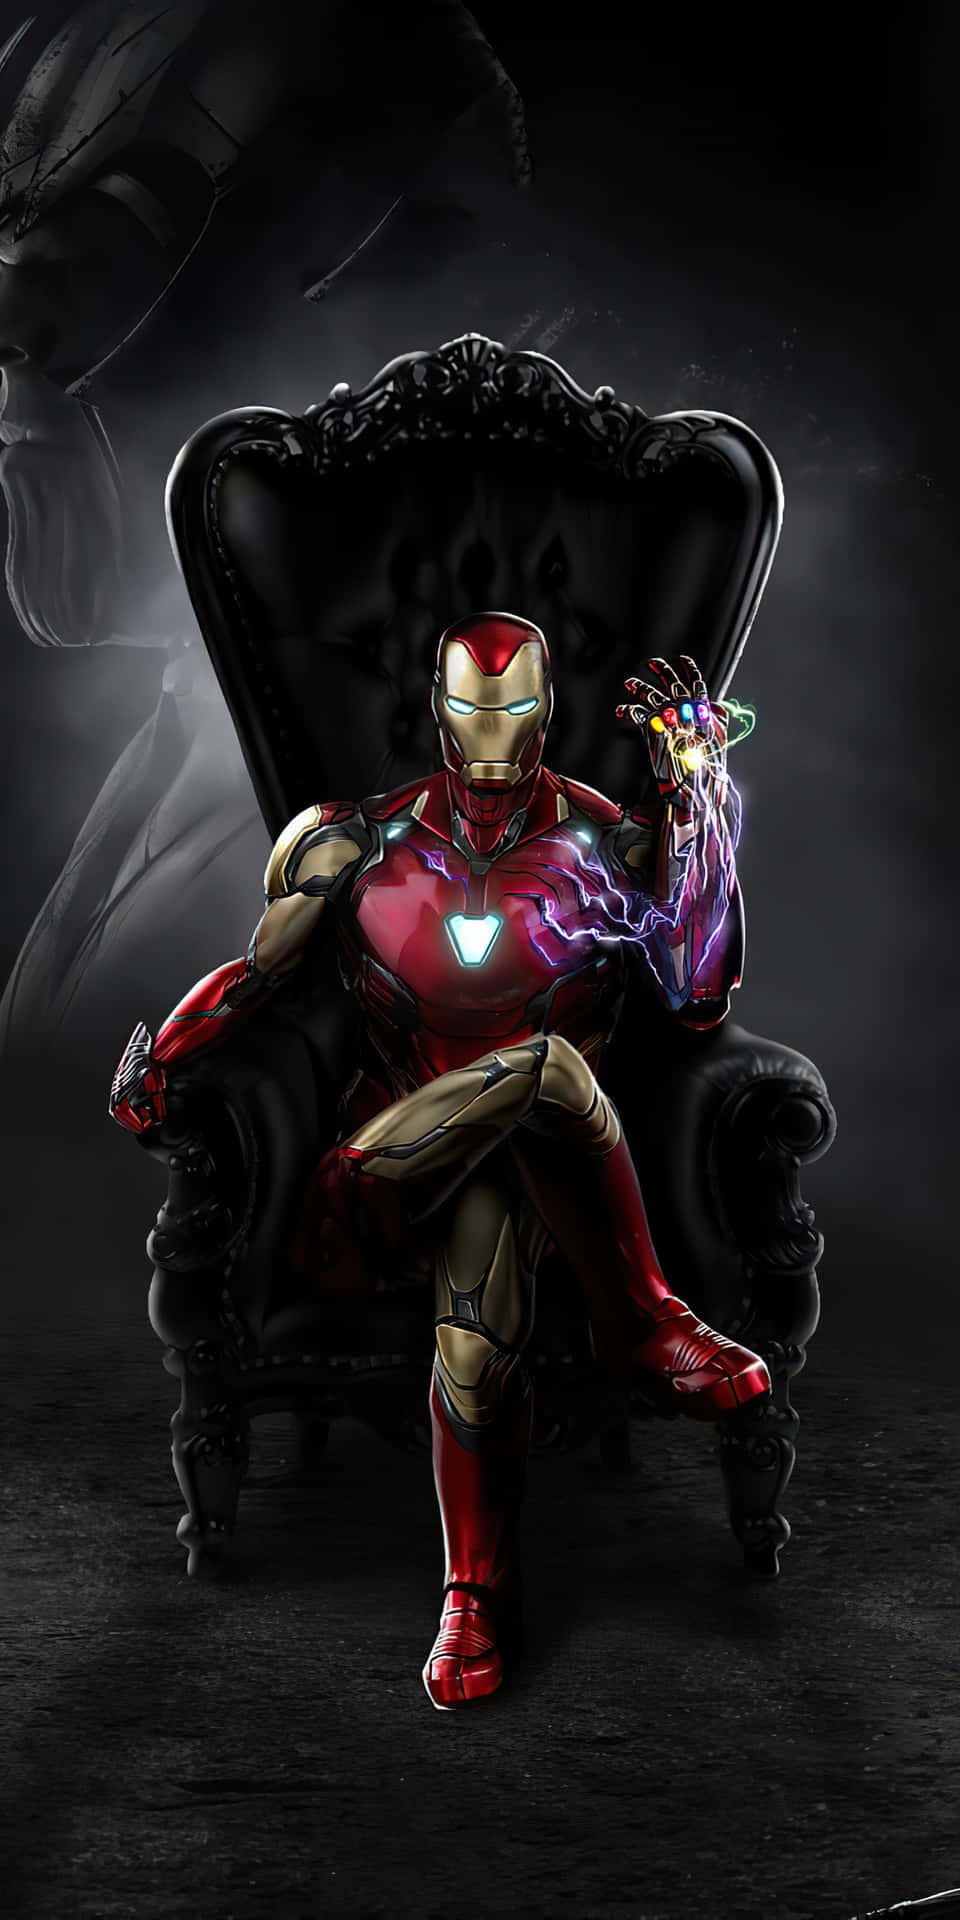 Pixel3 Bakgrundsbild Med Iron Man-handske På En Stol.